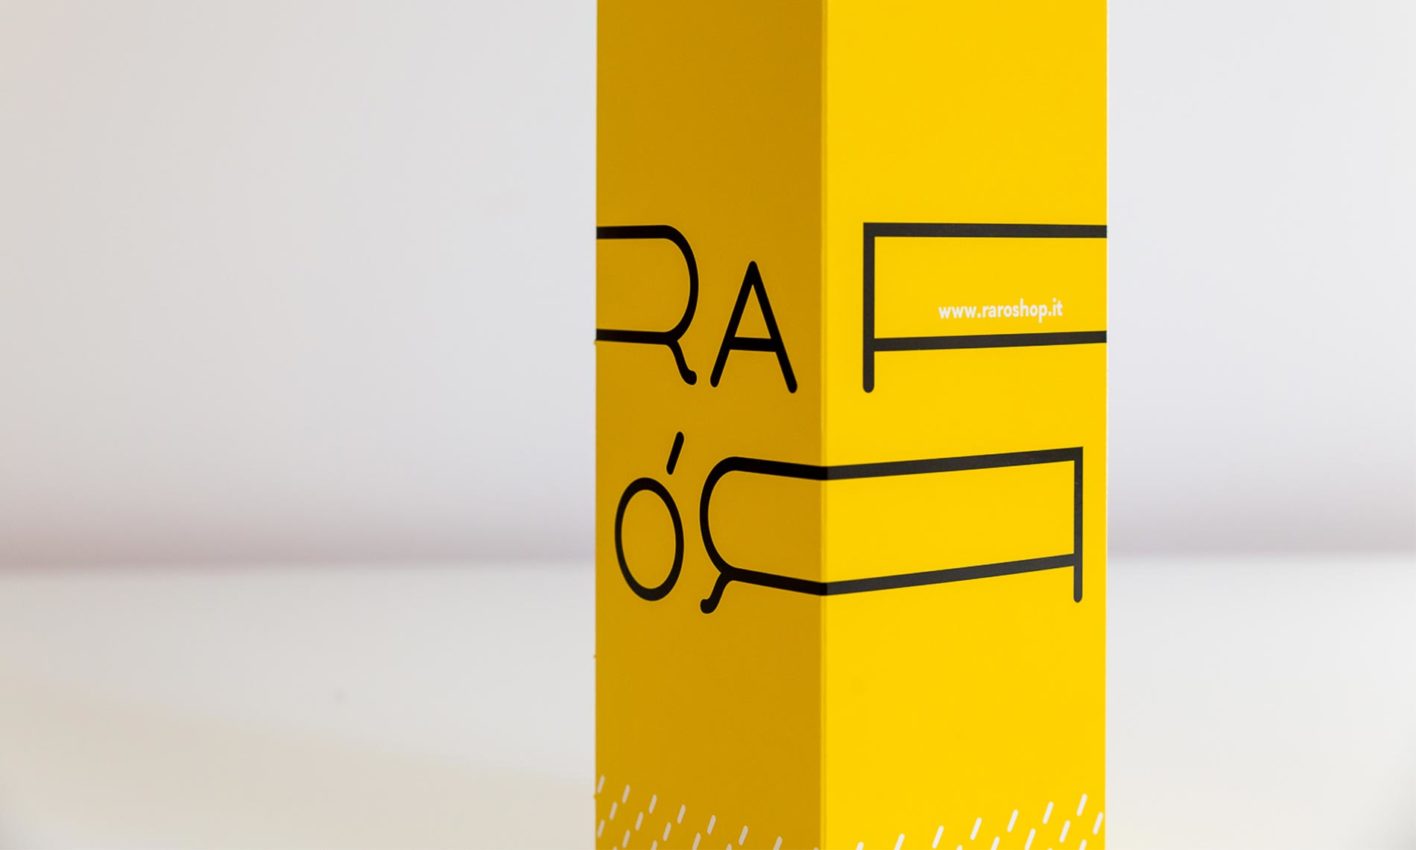 Sistema di identità visiva per Rarò. Studio: Identity Atlas graphic design: Laura Bortoloni, Andrea Verzola; anno: 2015